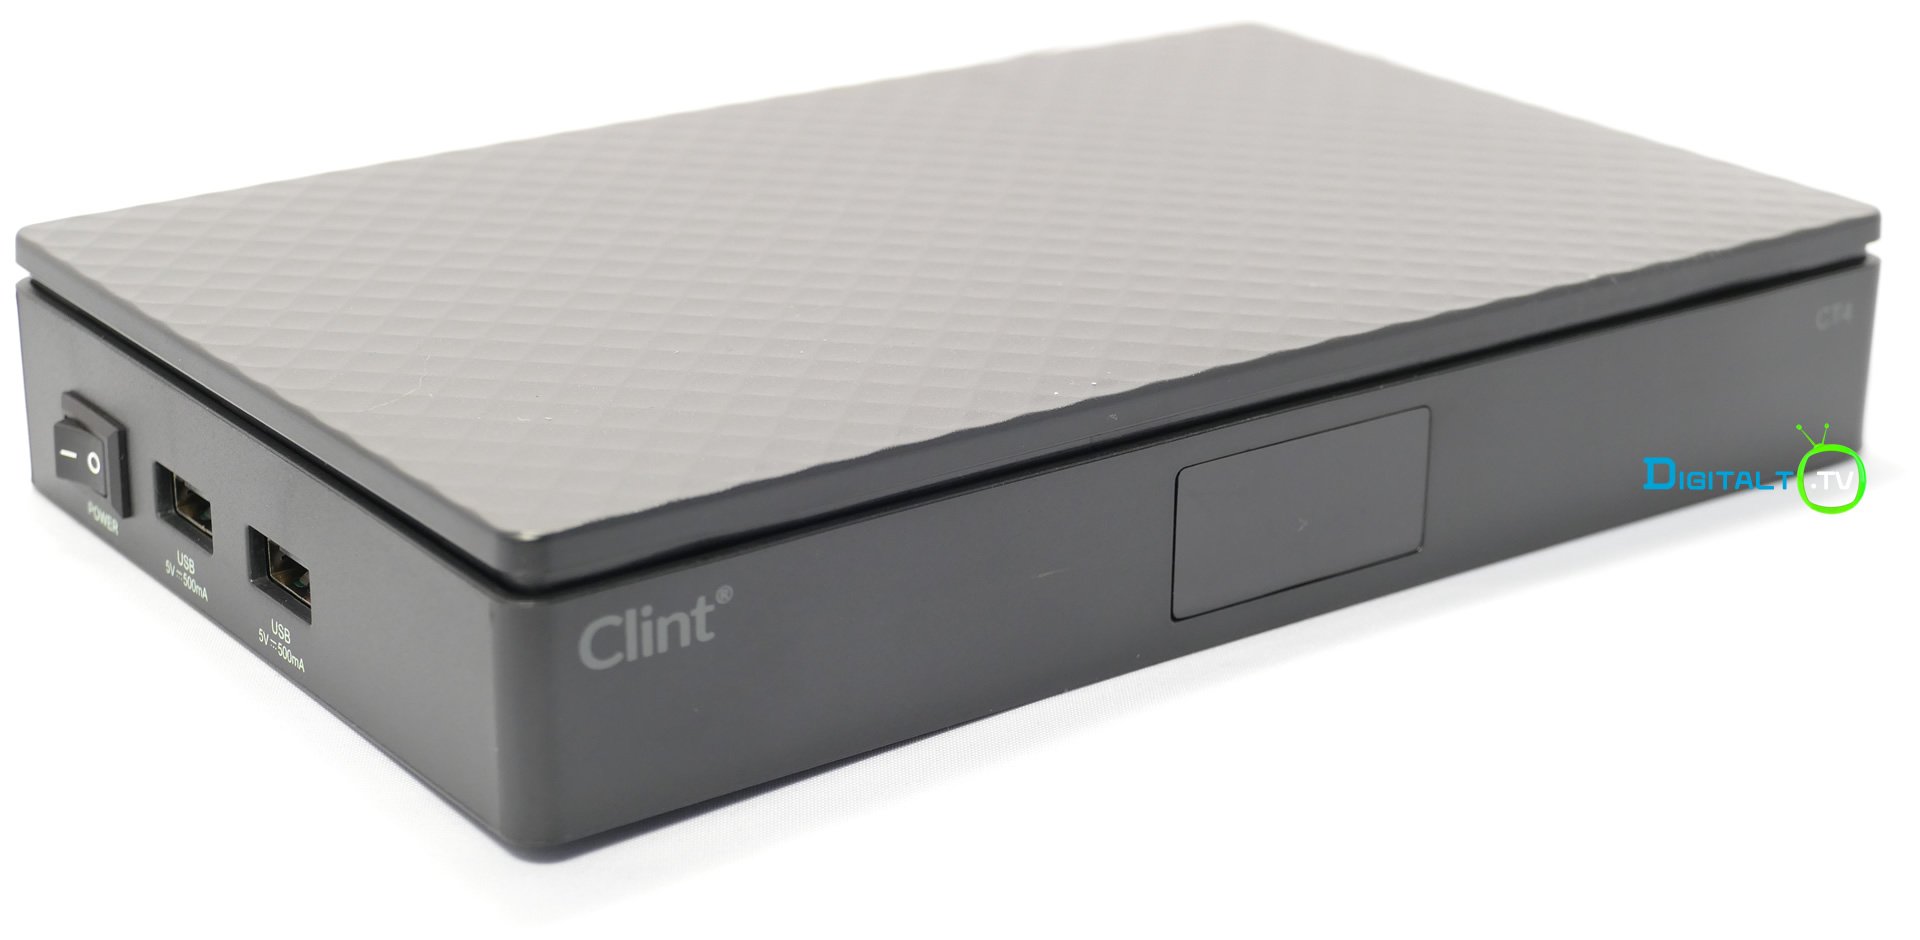 Clint CT4 skraa